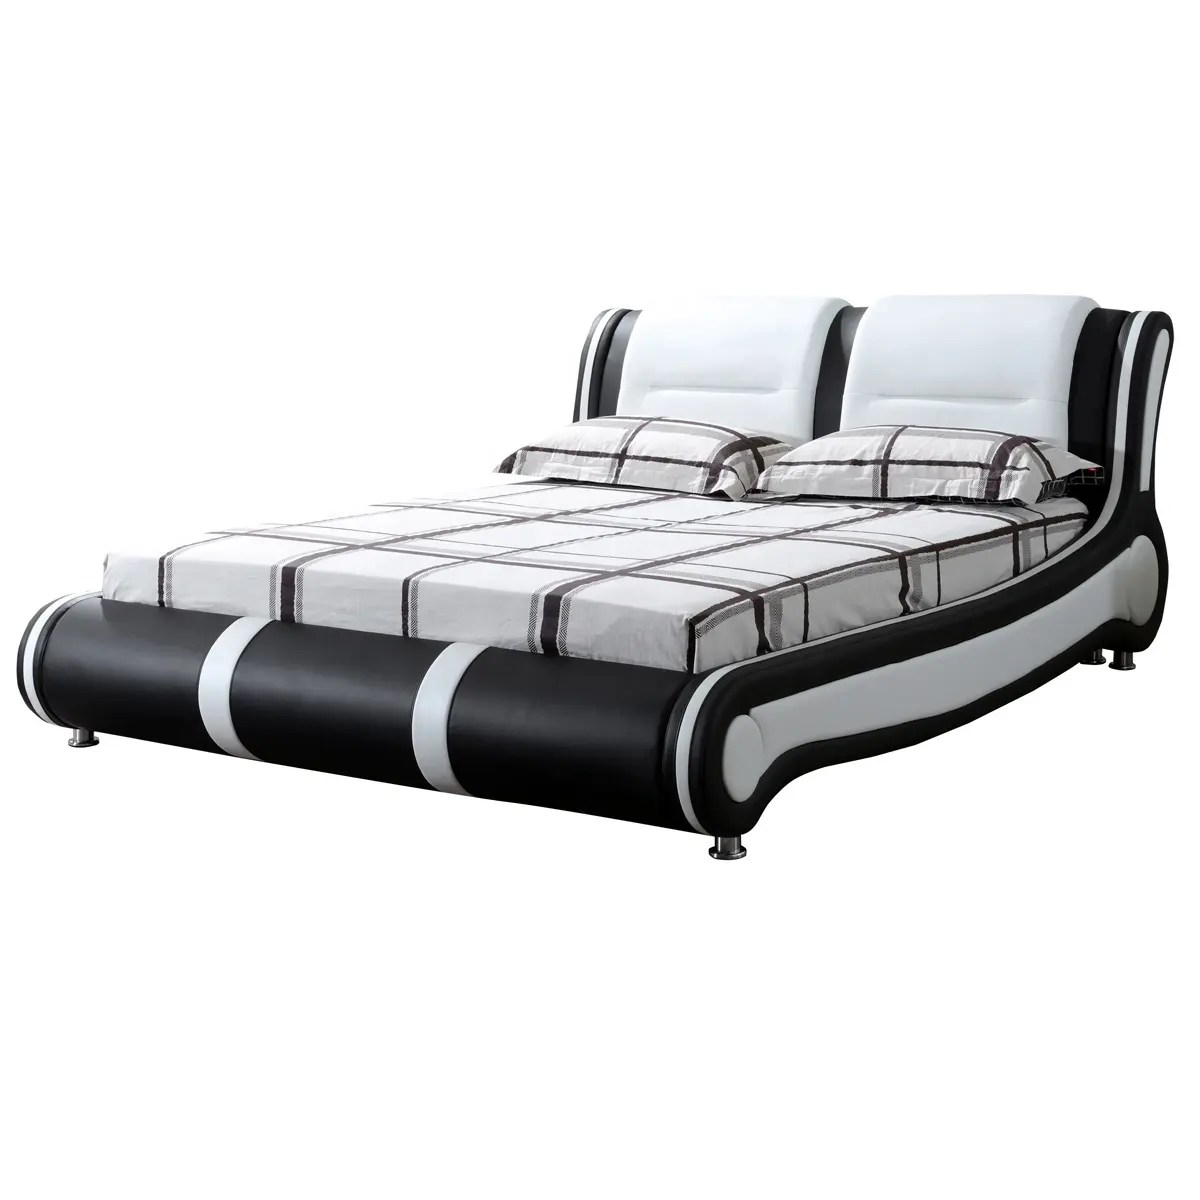 기능 스테레오 침대 음악 핫 세일 최신 디자인 퀸 사이즈 침대 로프트 침대 G1189 #